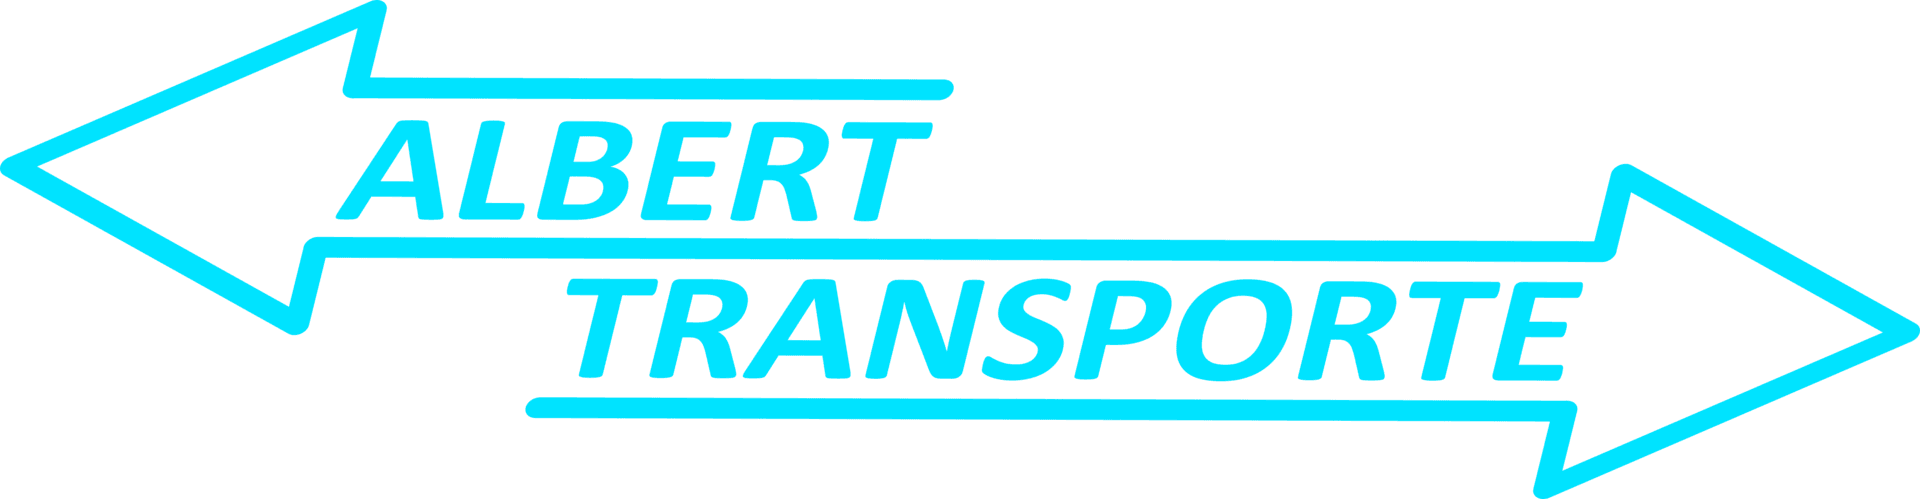 Albert Transporte Weiz Graz Steiermark Österreich-weit